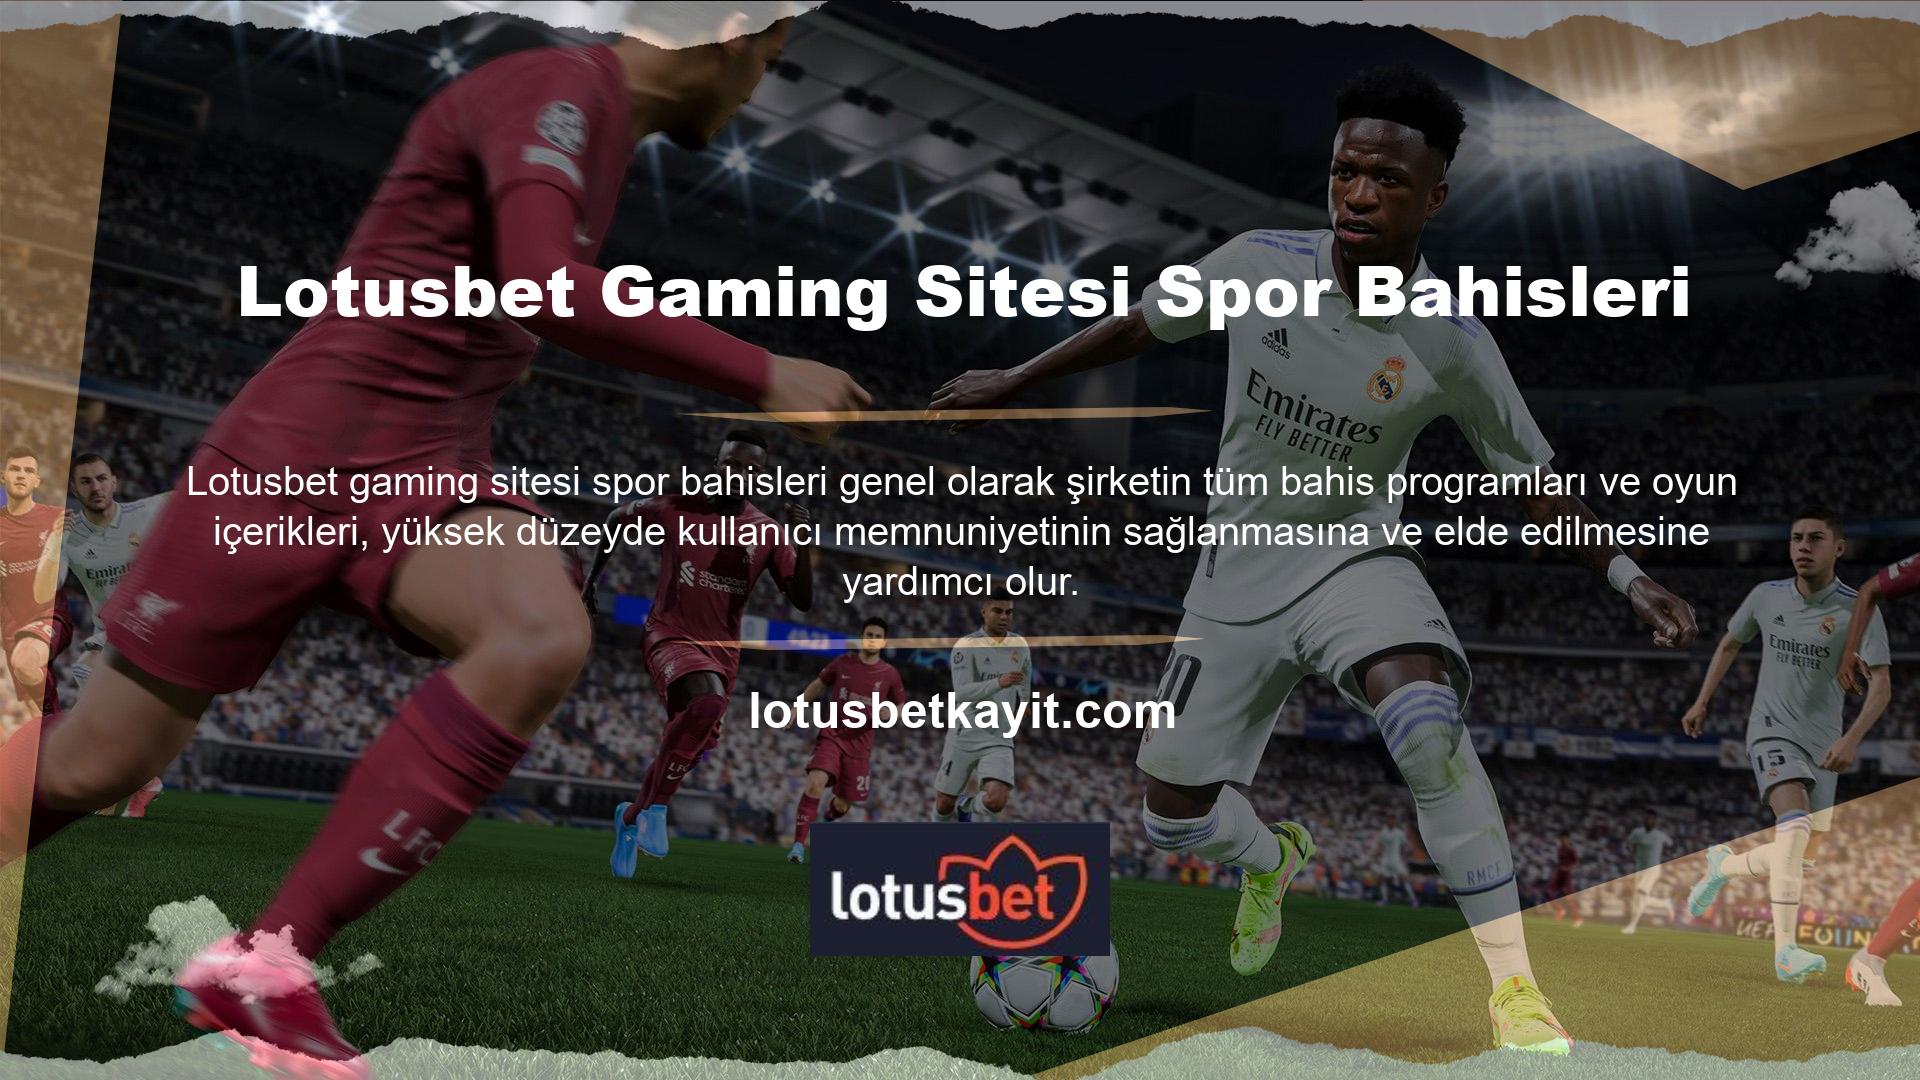 Bu nedenle Lotusbet oyun sitesinin çevrimiçi canlı bahis ve çevrimiçi bahis yayınları, çeşitli oyunlarda çok büyük ödüller kazanmanızı sağlayan kuponlar yerleştirerek spor bahislerini çok karlı hale getiren yüksek kaliteli bir program oluşturabilir